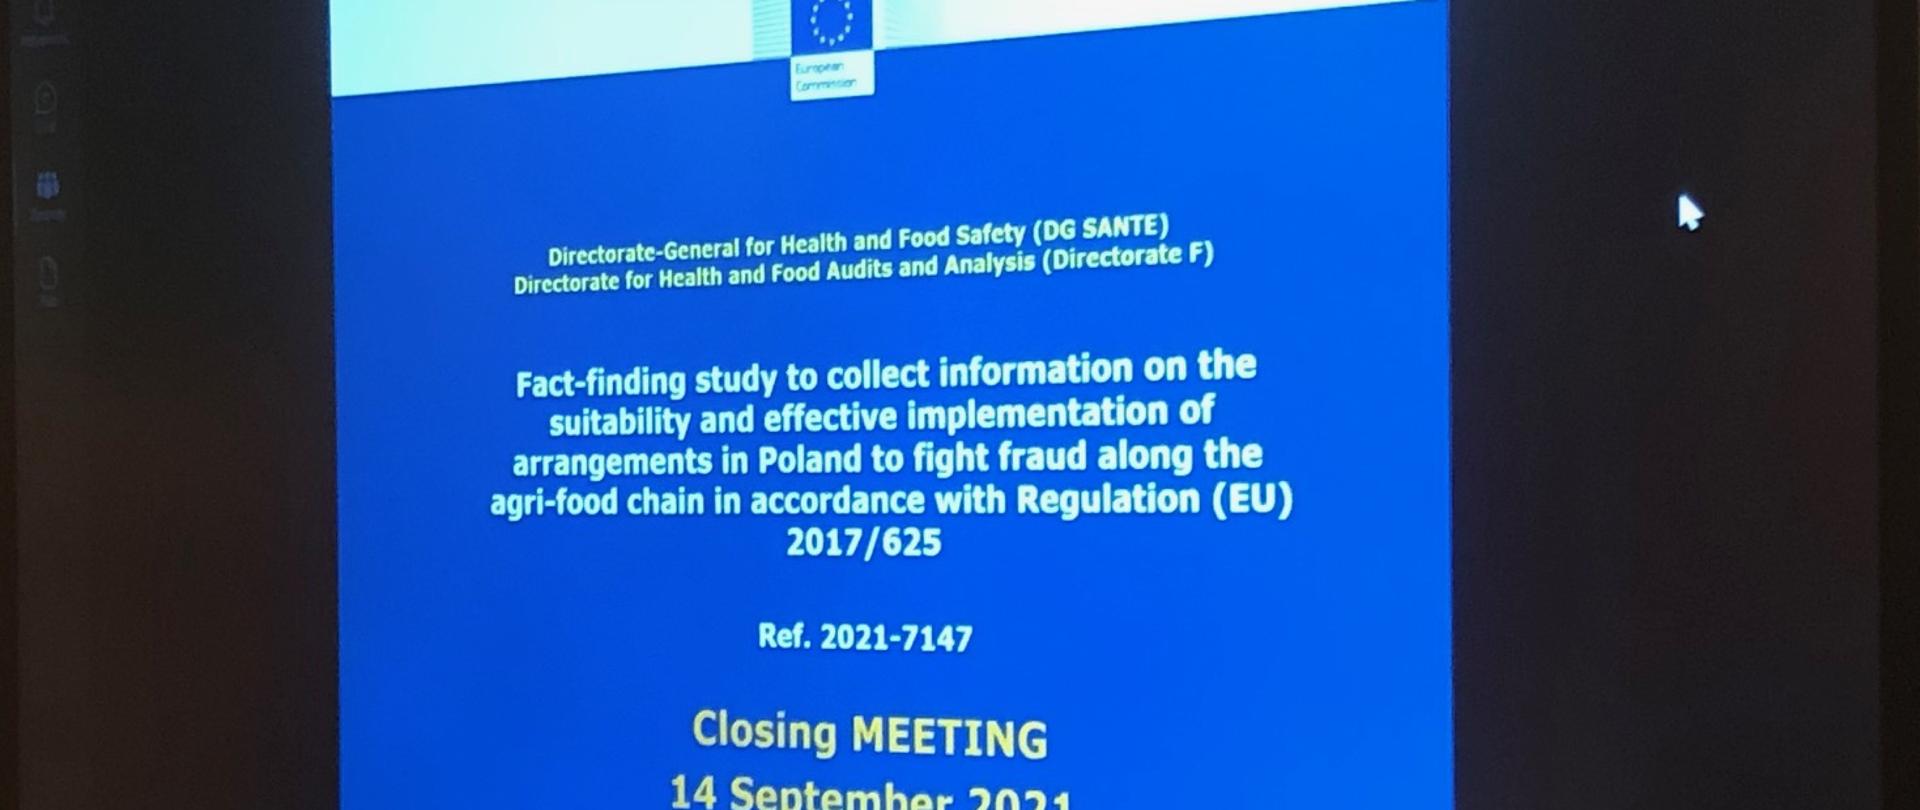 Ekran przedstawiający pierwszy slajd prezentacji audytorów Komisji Europejskiej - spotkanie zamykające.